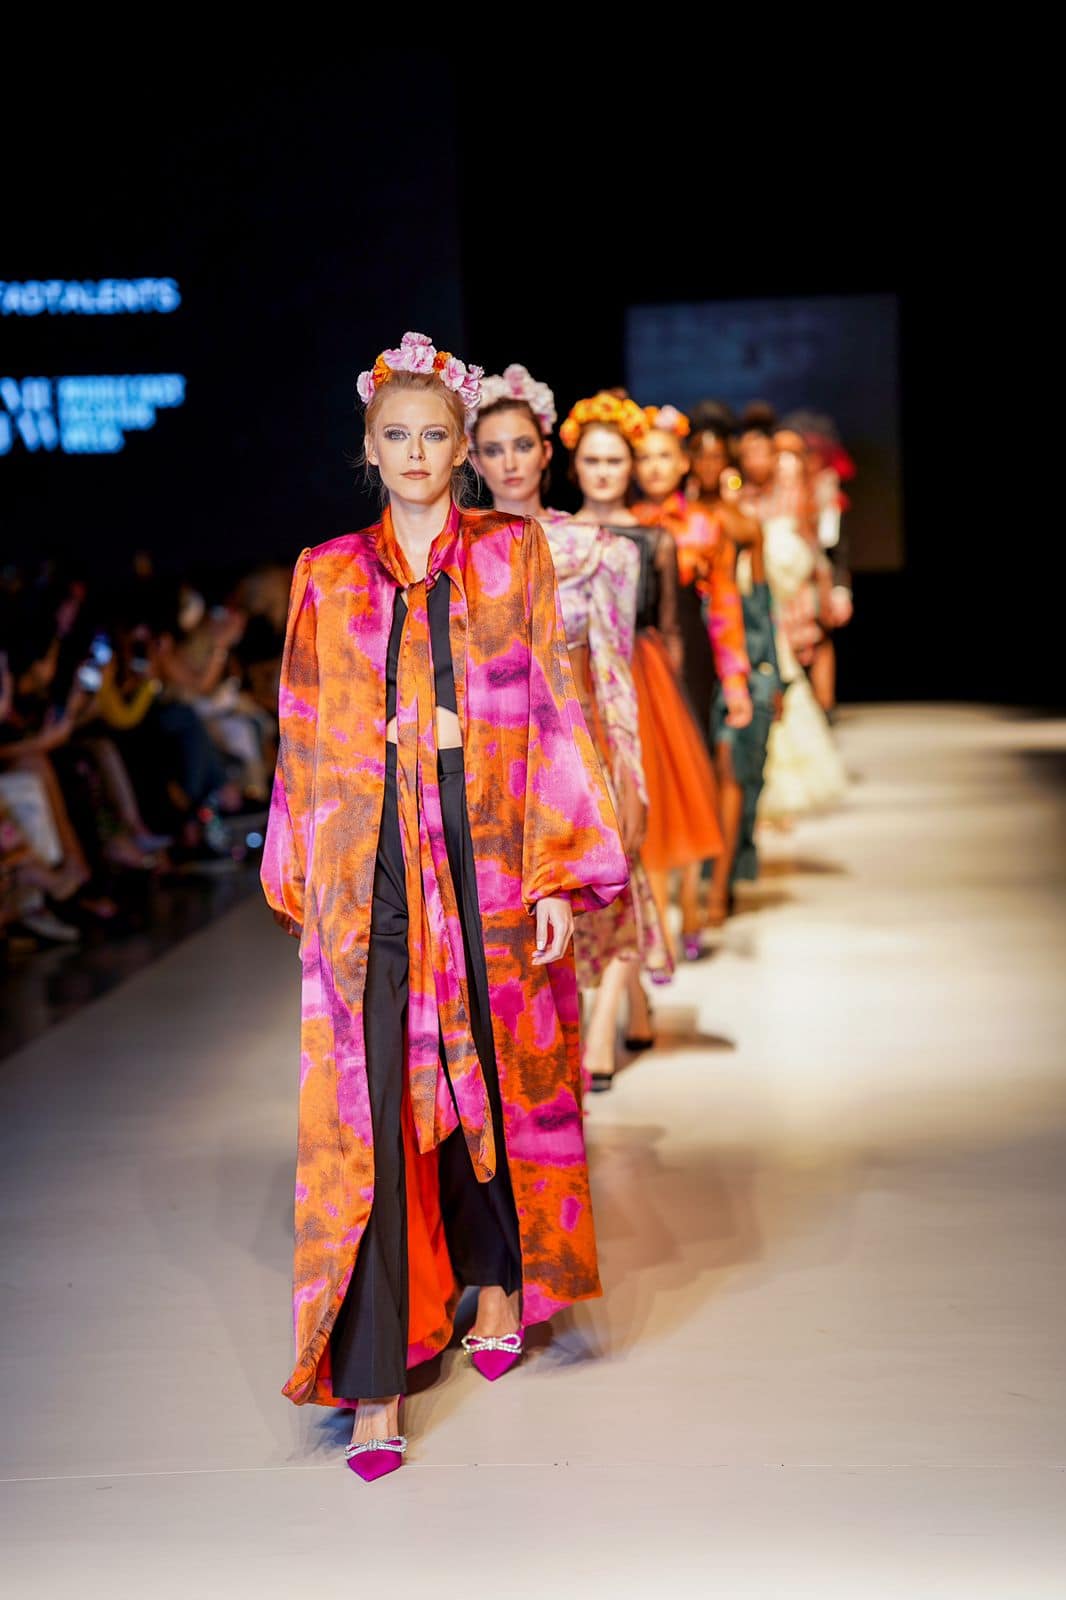 أسبوع الموضة في الشرق الأوسط يسدل الستار على نسختهِ الإفتتاحية بنجاح في إمارة دبي